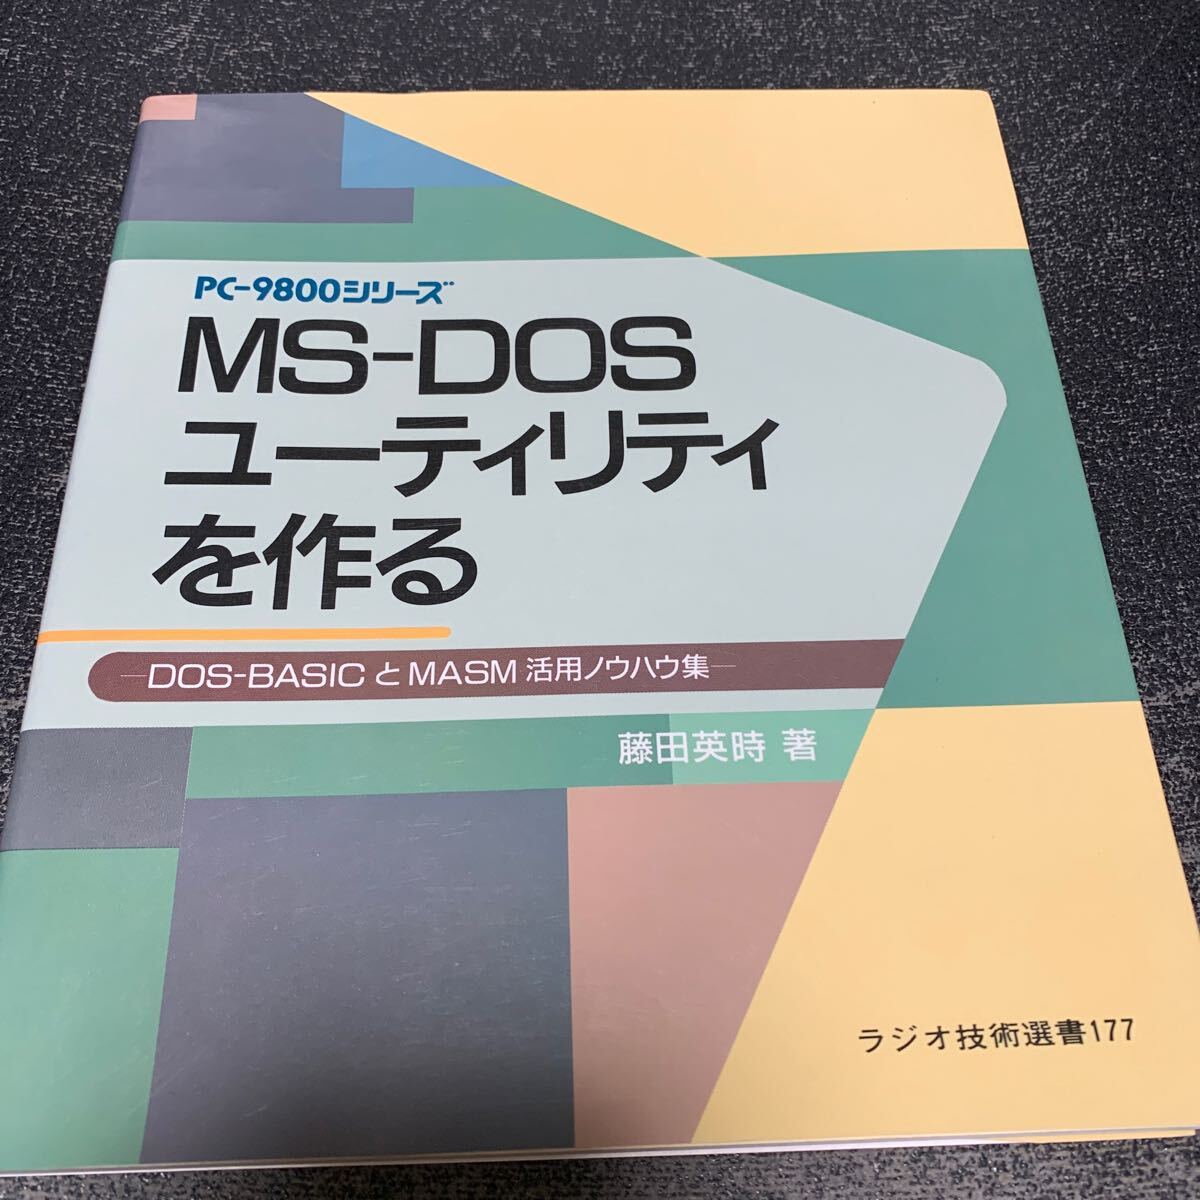 MS-DOS служебная программа . произведение .DOS-BASIC.MASM. практическое применение ноу-хау сборник радио технология подбор книг 